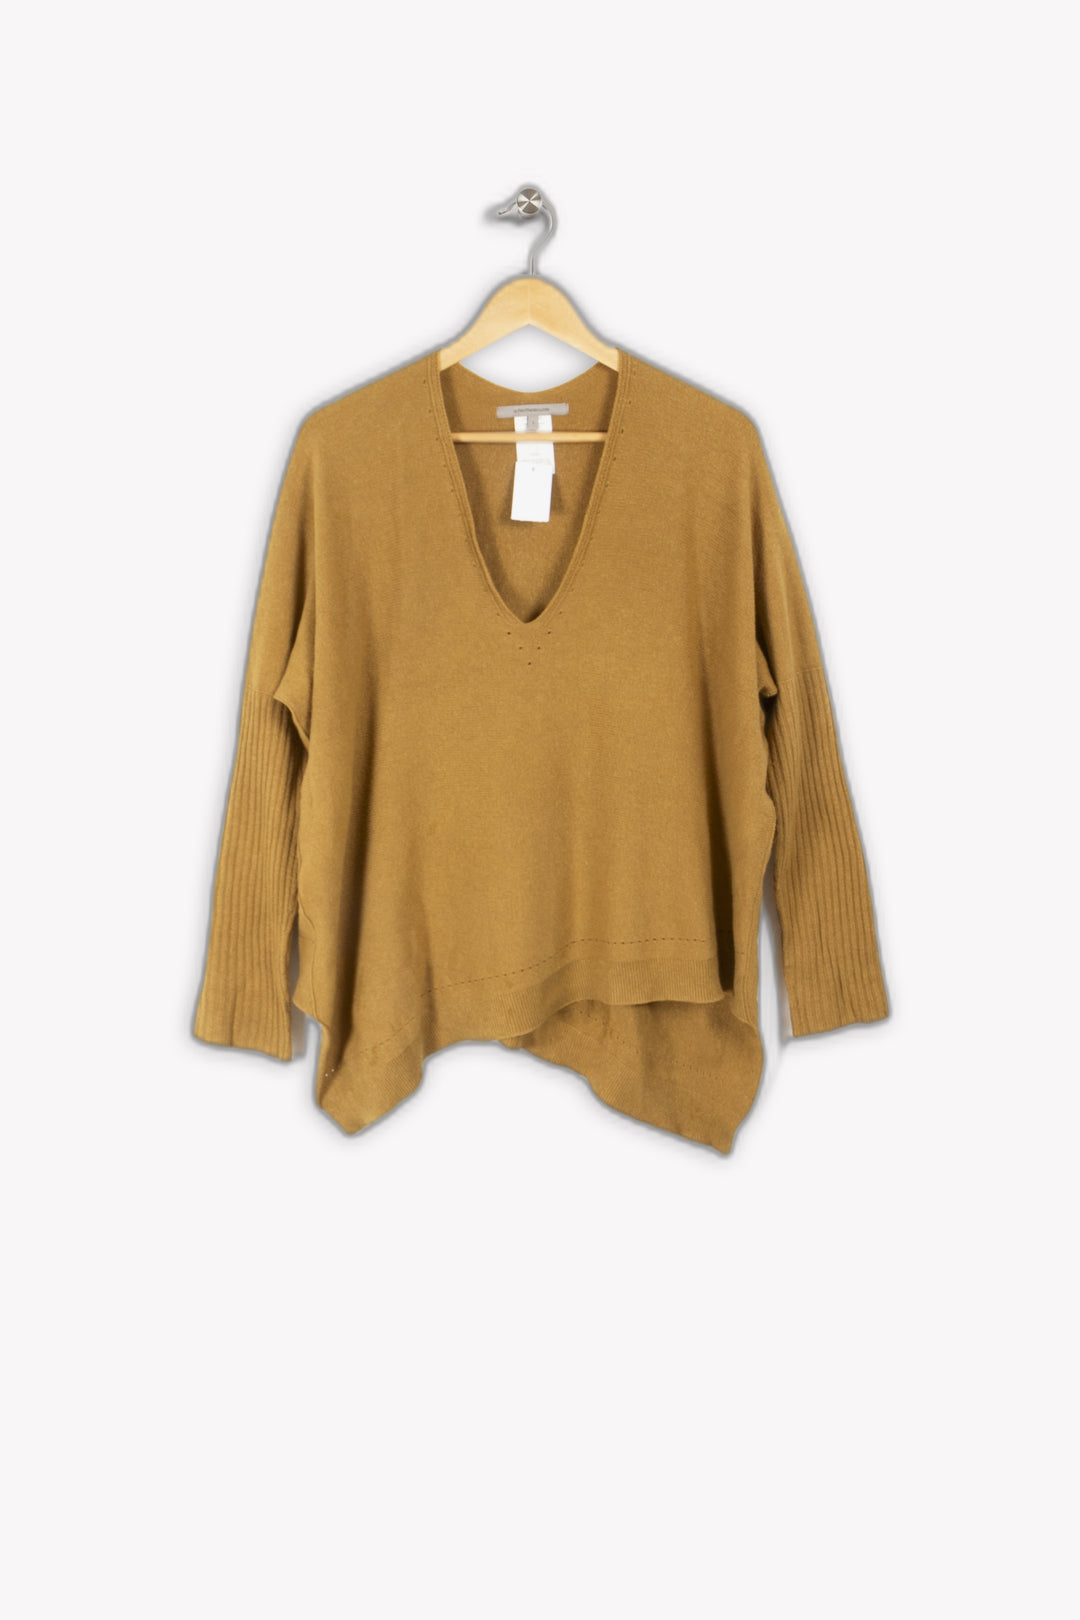 Mustard V sweater - L/40